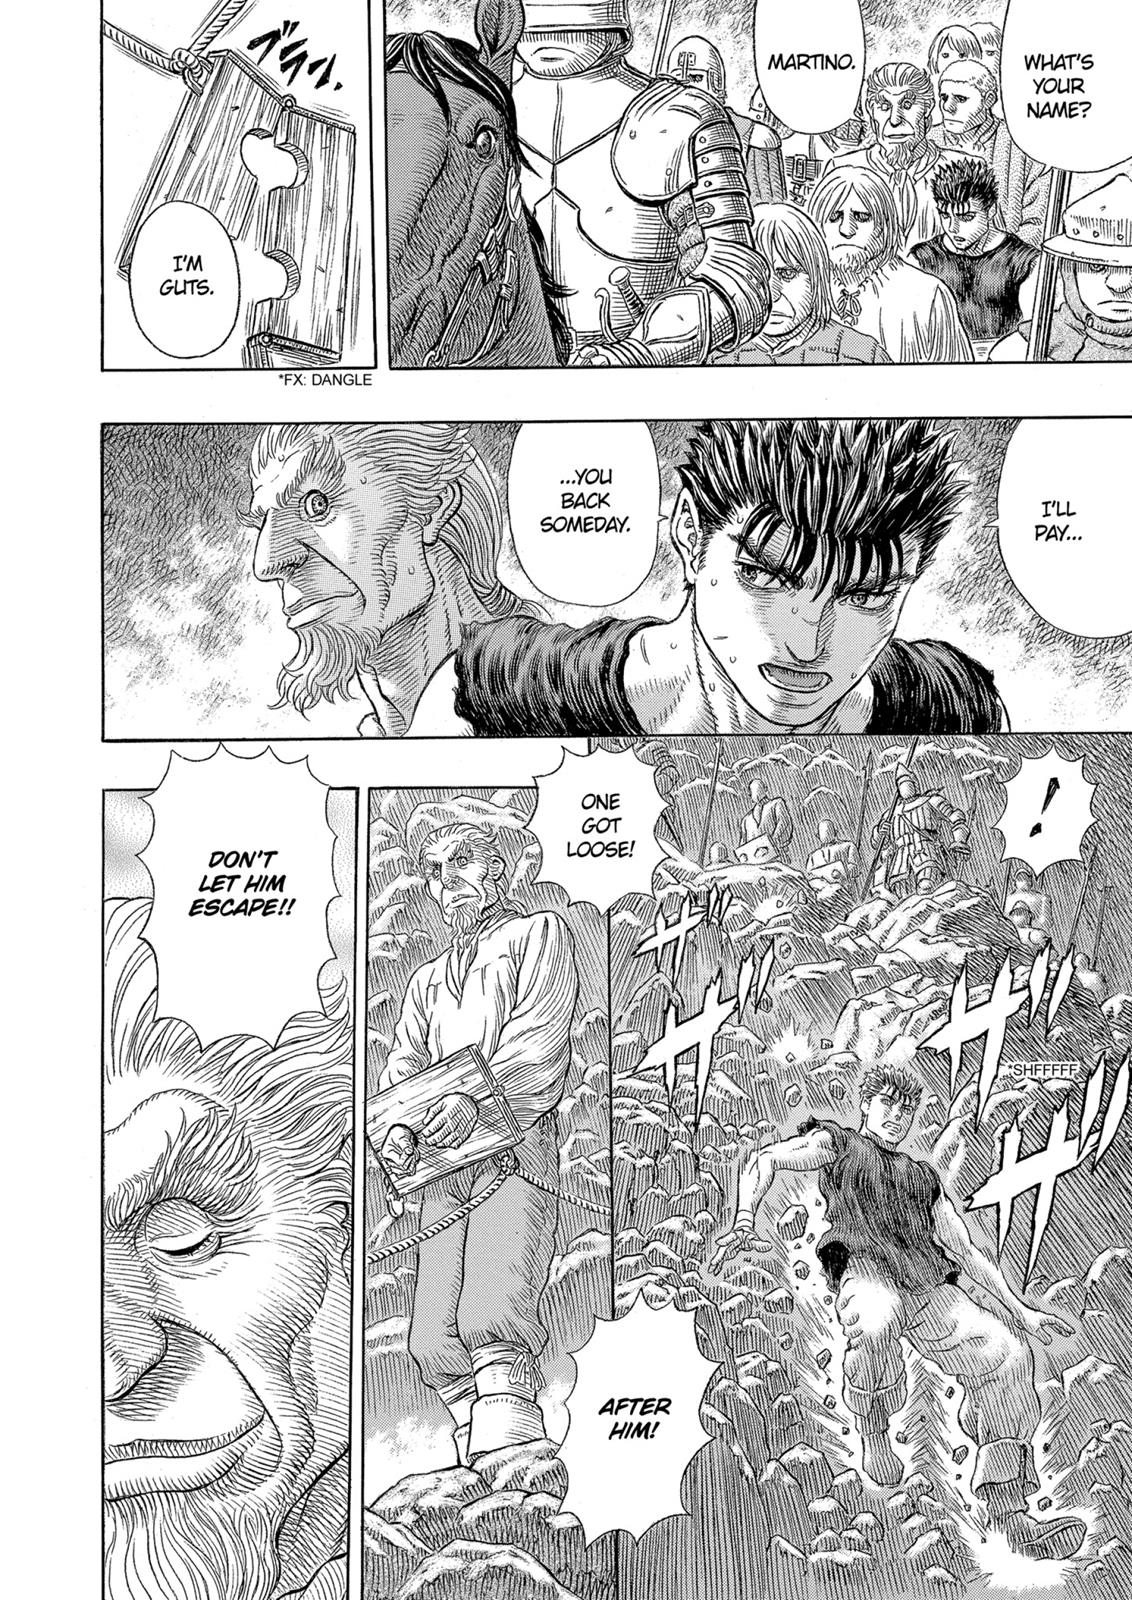 Berserk Manga Chapter 329 image 11